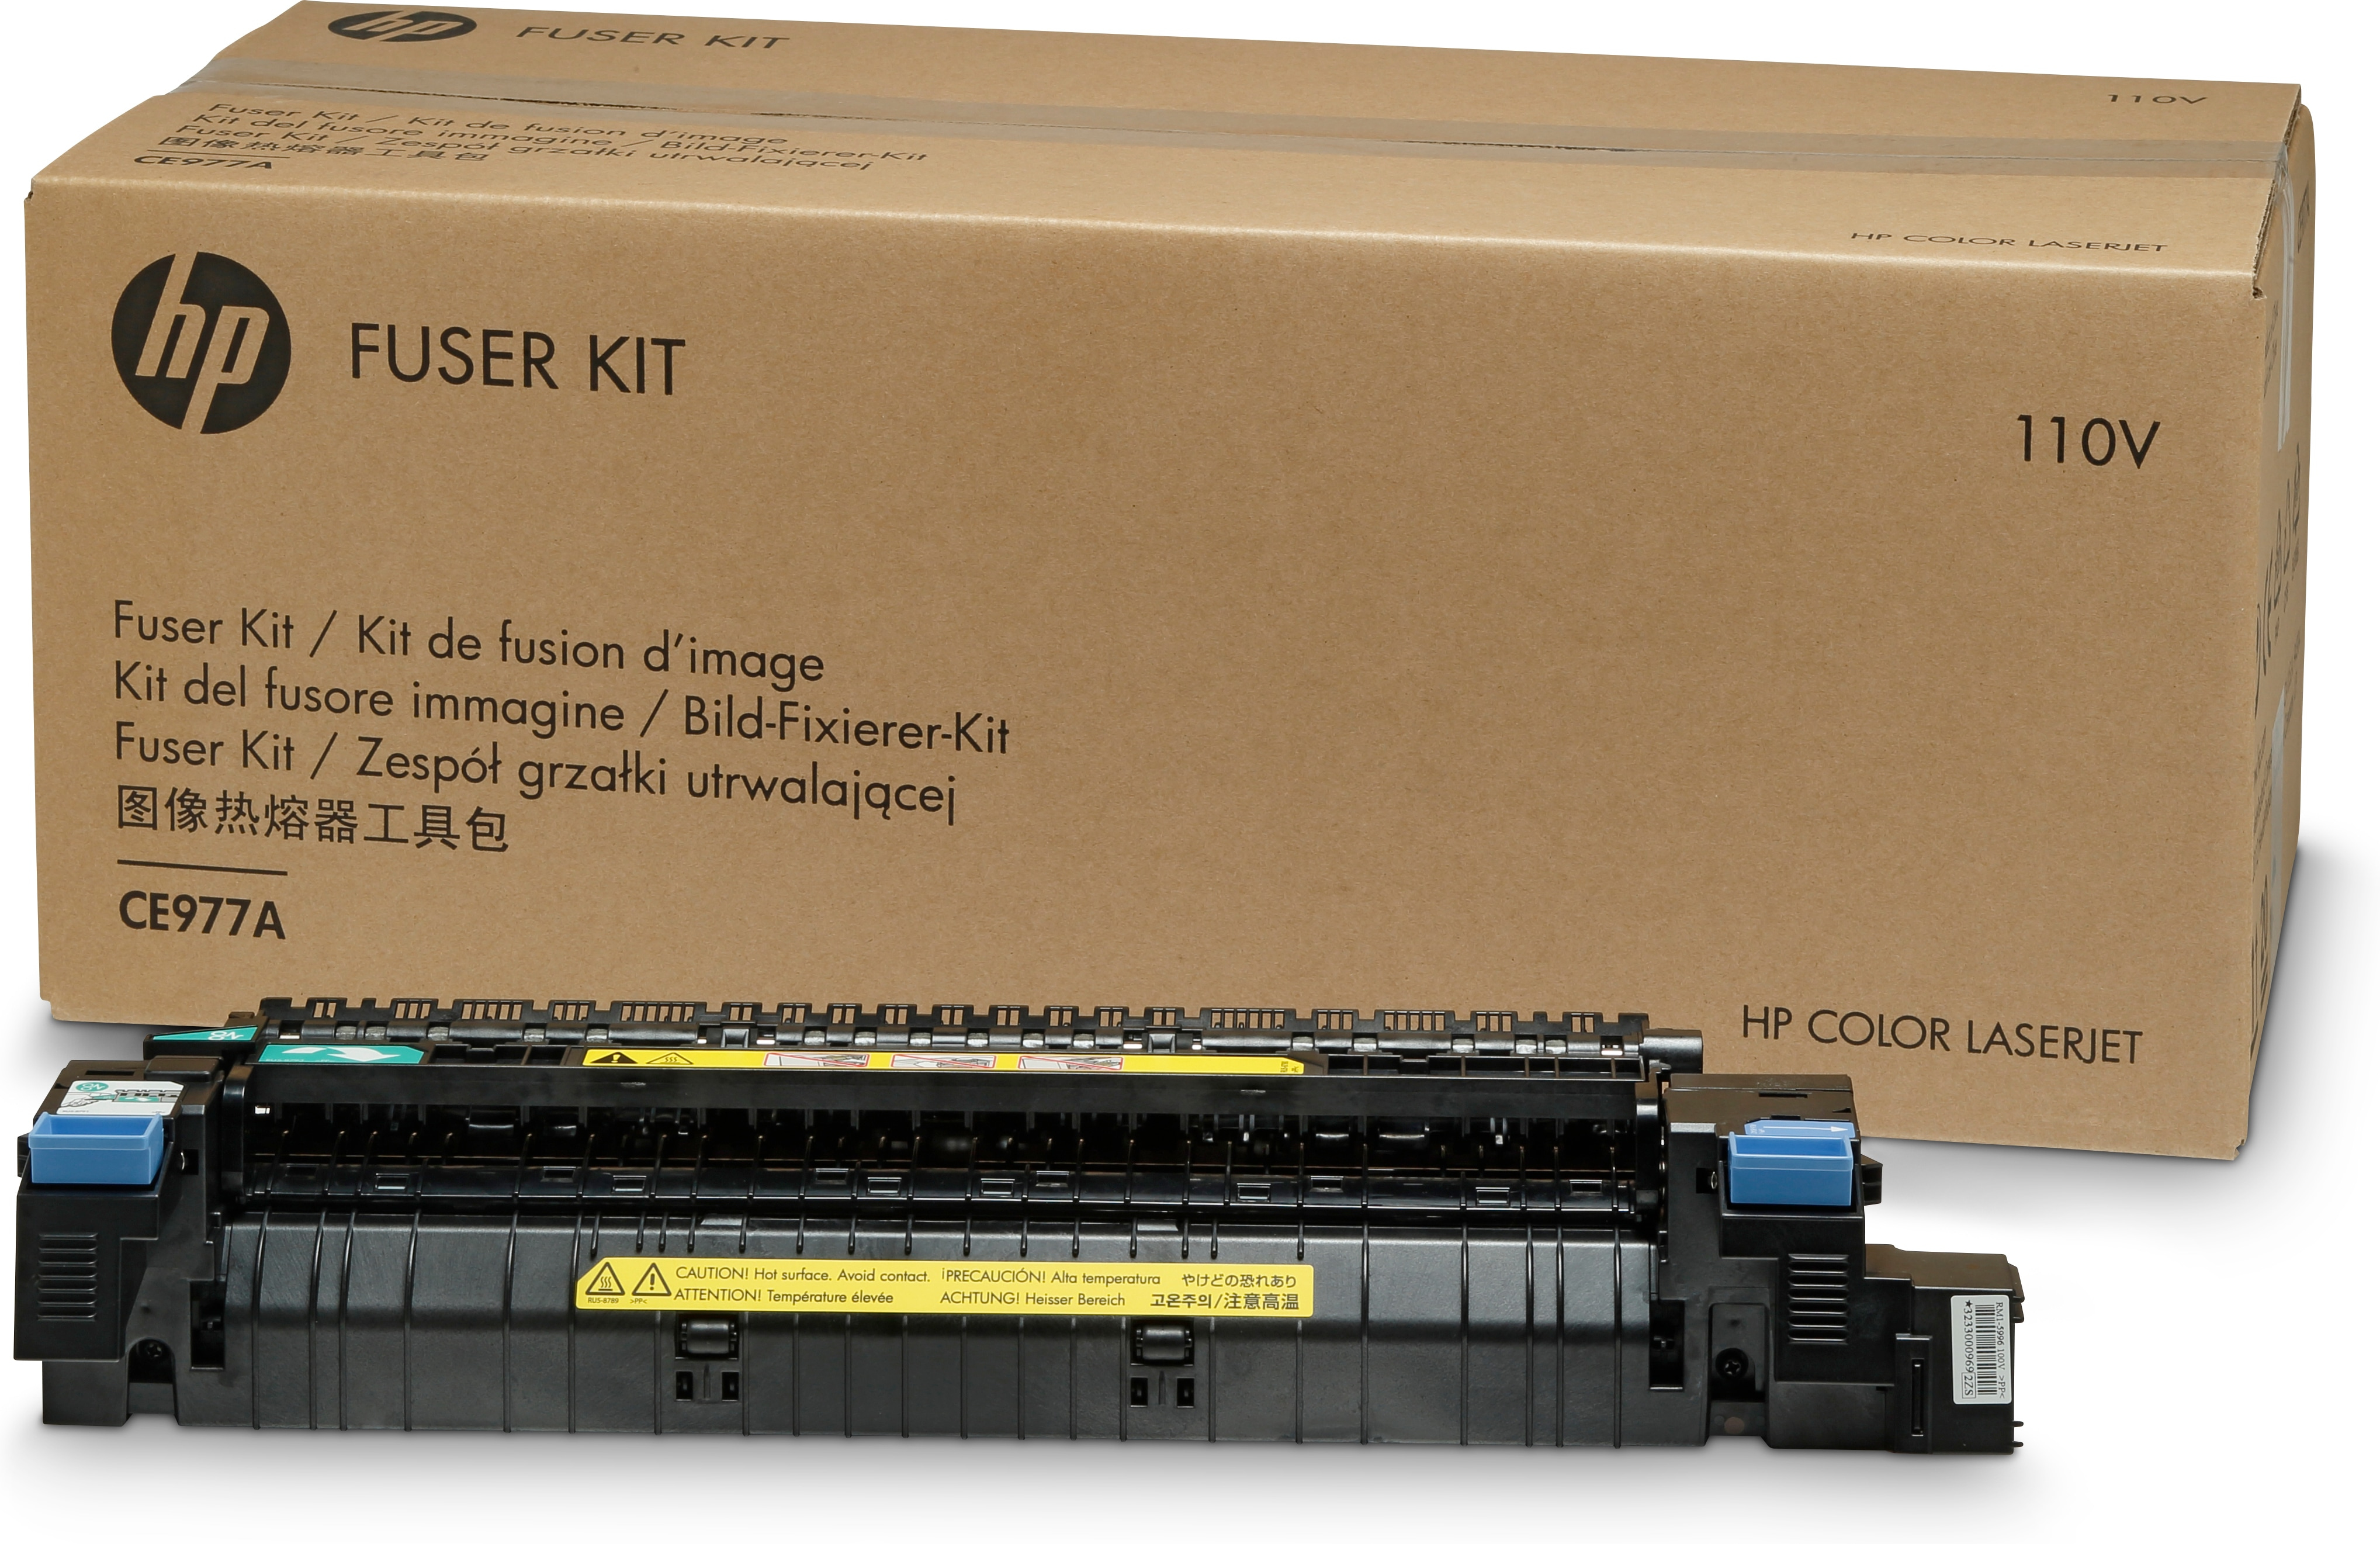 HP Color LaserJet 220-VOLT FUSER KIT - Fixiereinheit